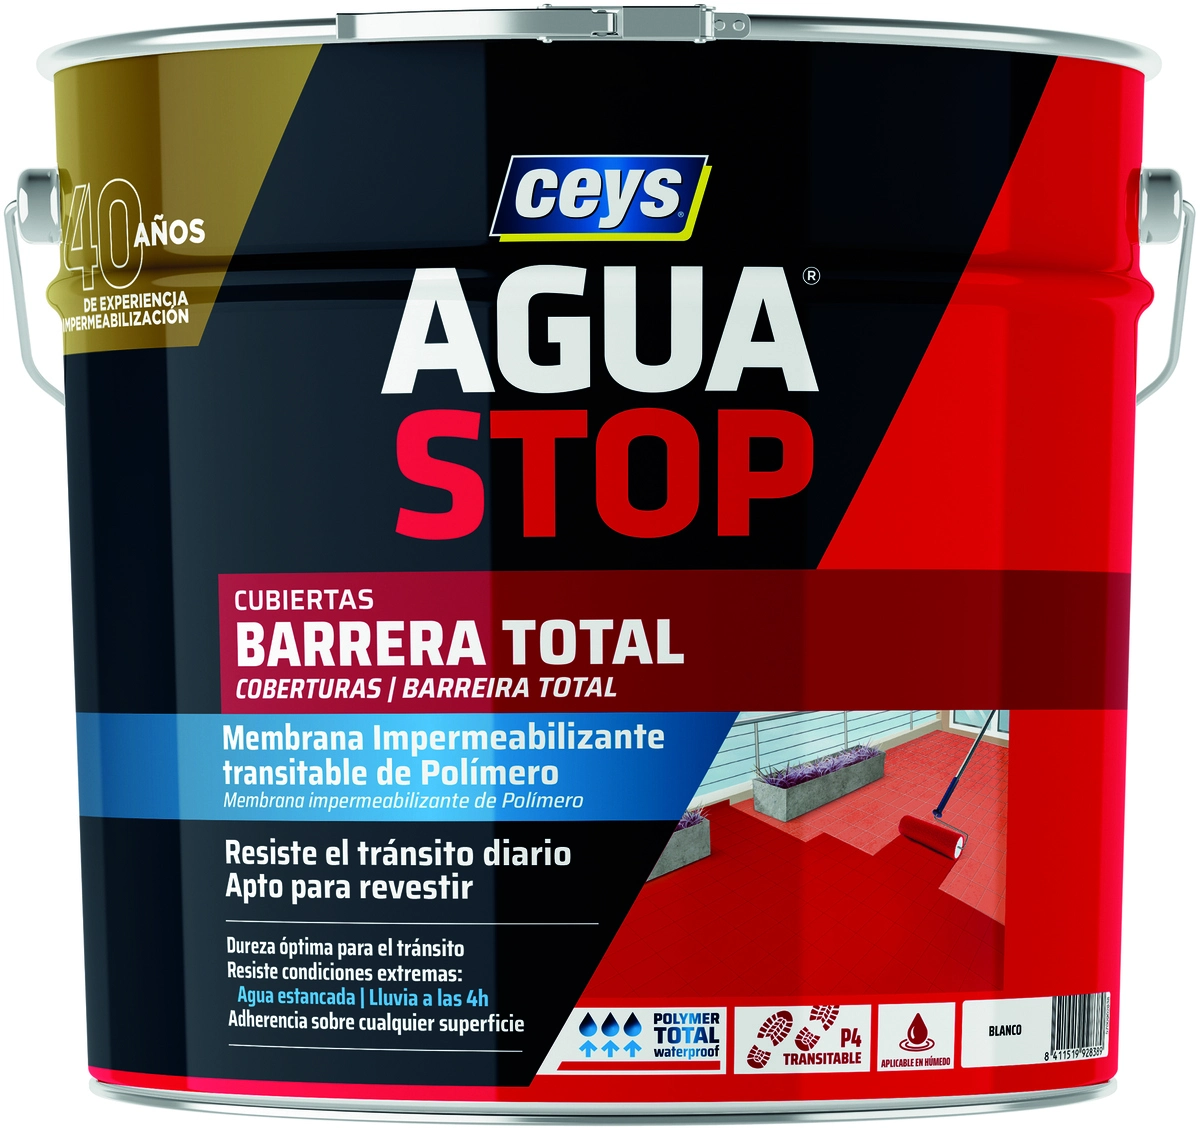 AGUASTOP Barrera Total - Ceys